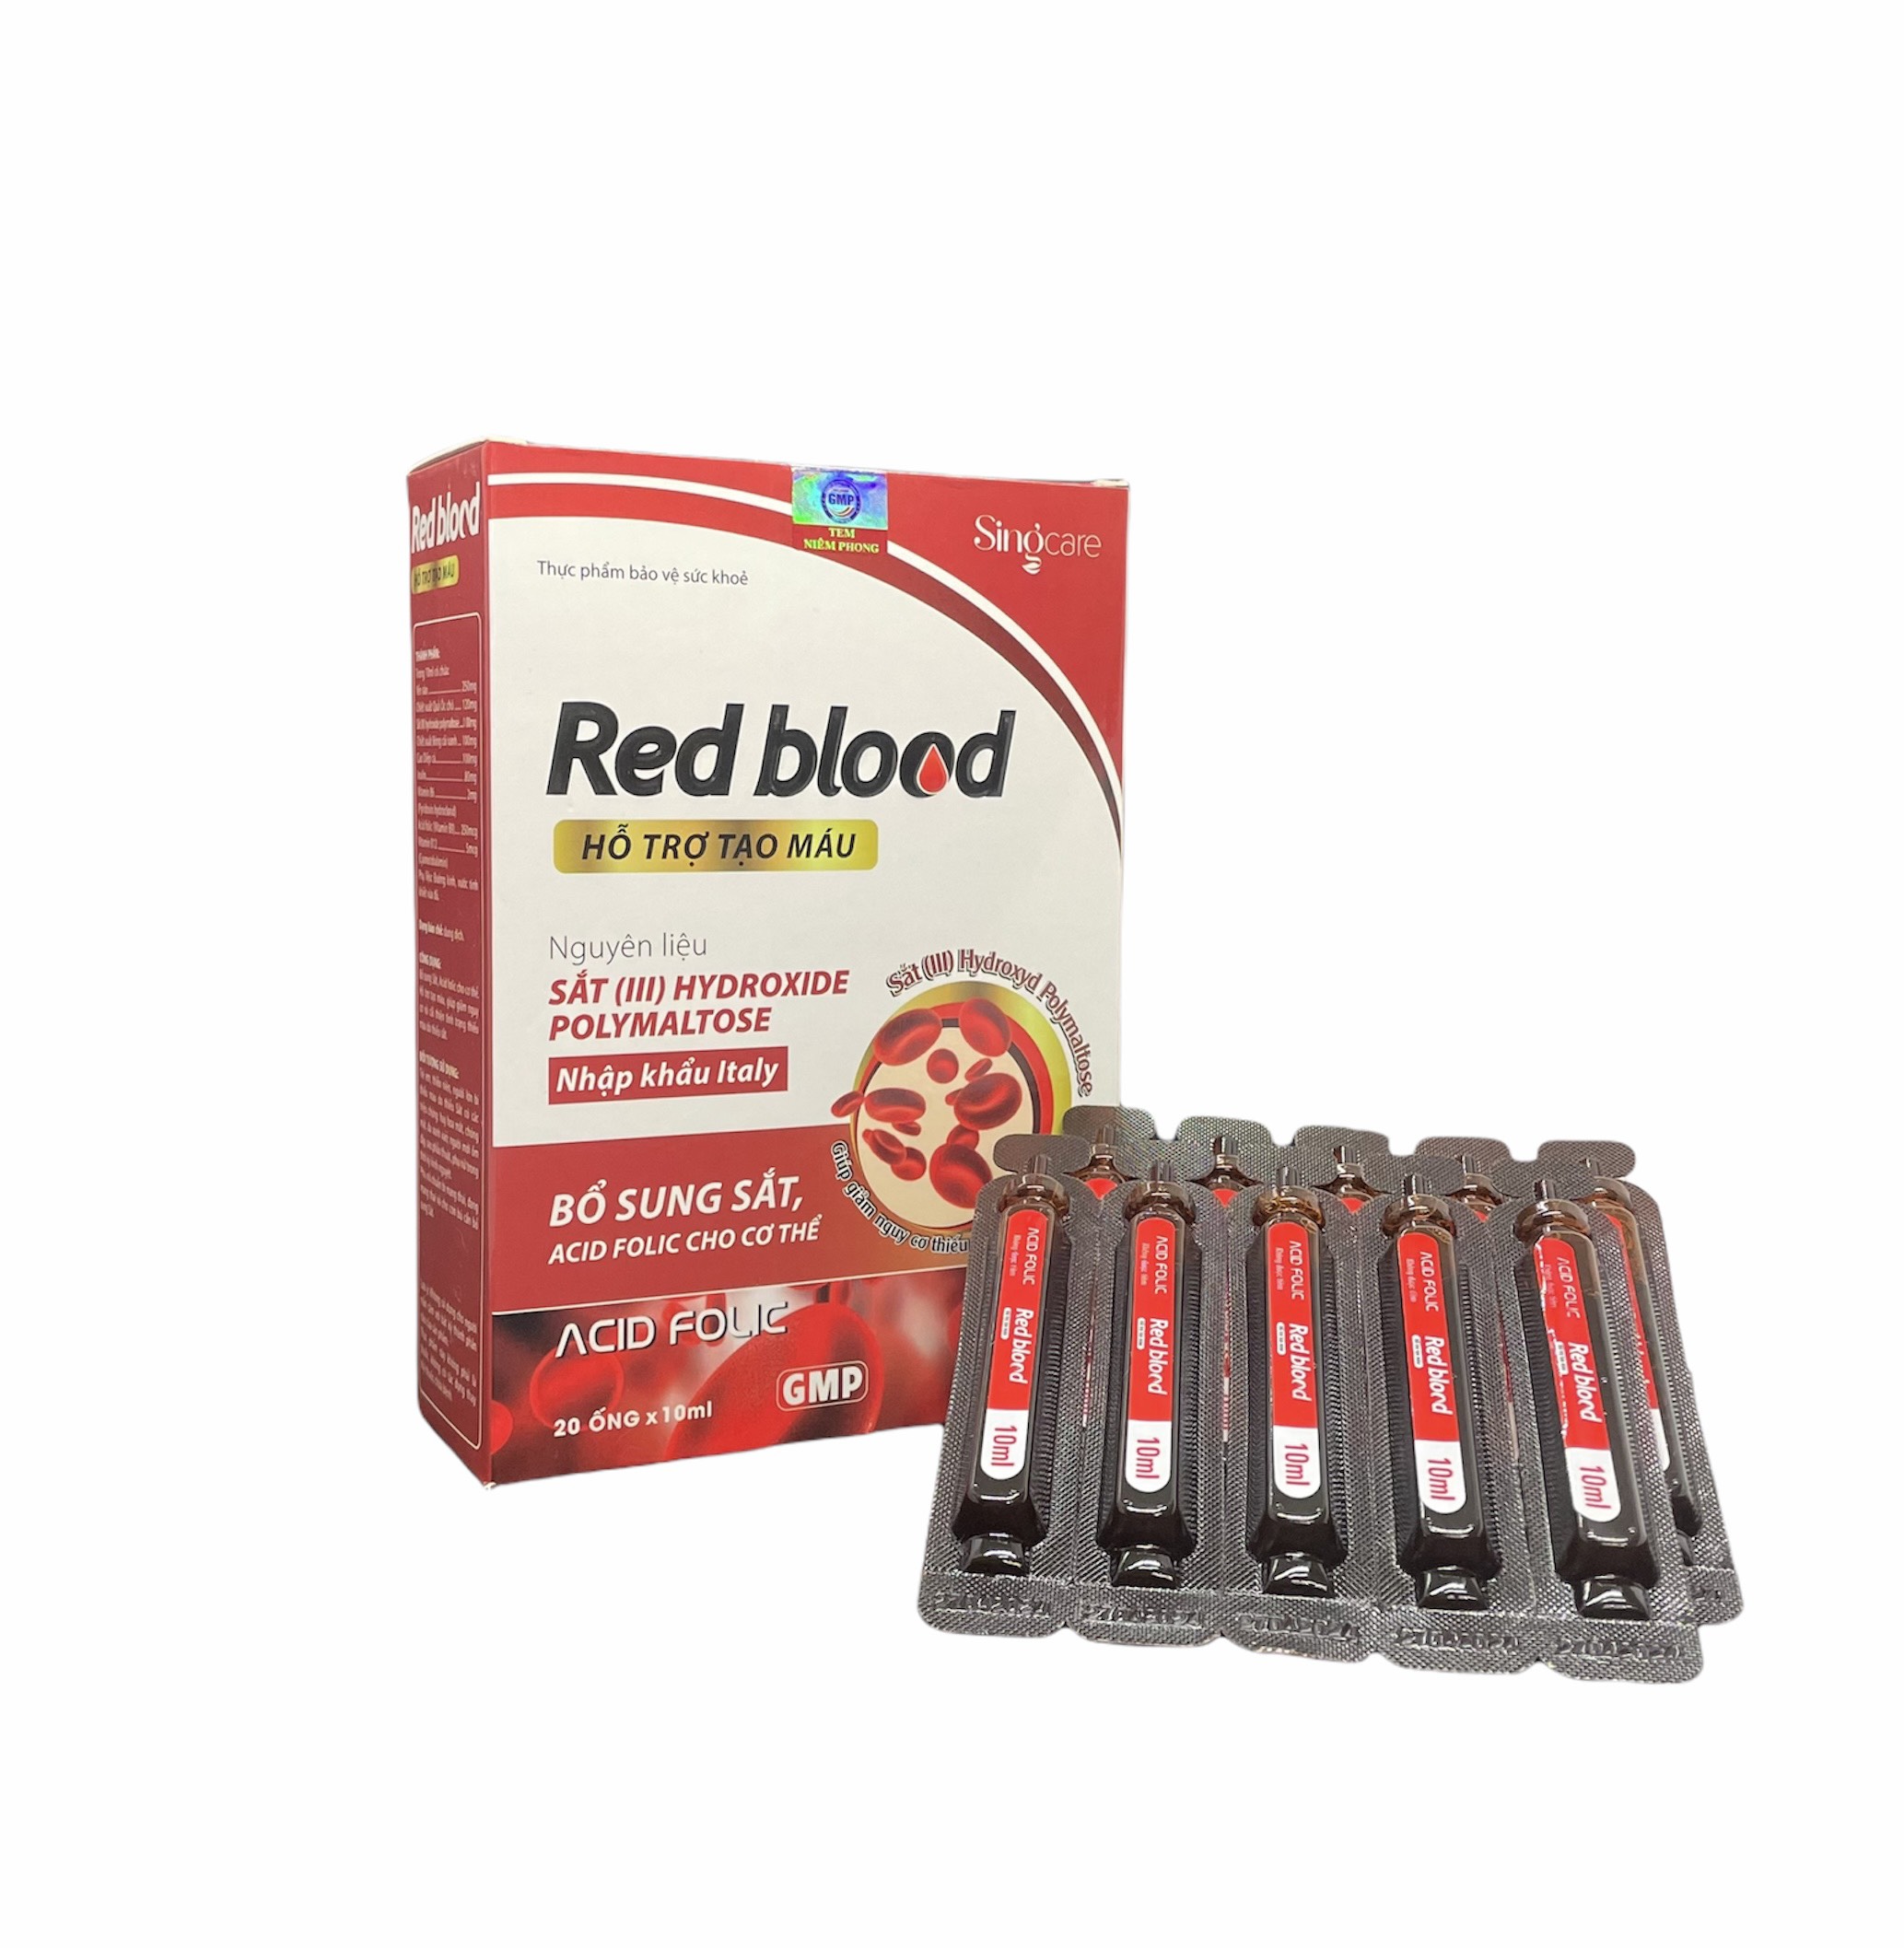 Red Blood - Bổ sung sắt, Acid folic cho cơ thể. Hỗ trợ tạo máu, giúp giảm nguy cơ và cải thiện tình trạng thiếu máu